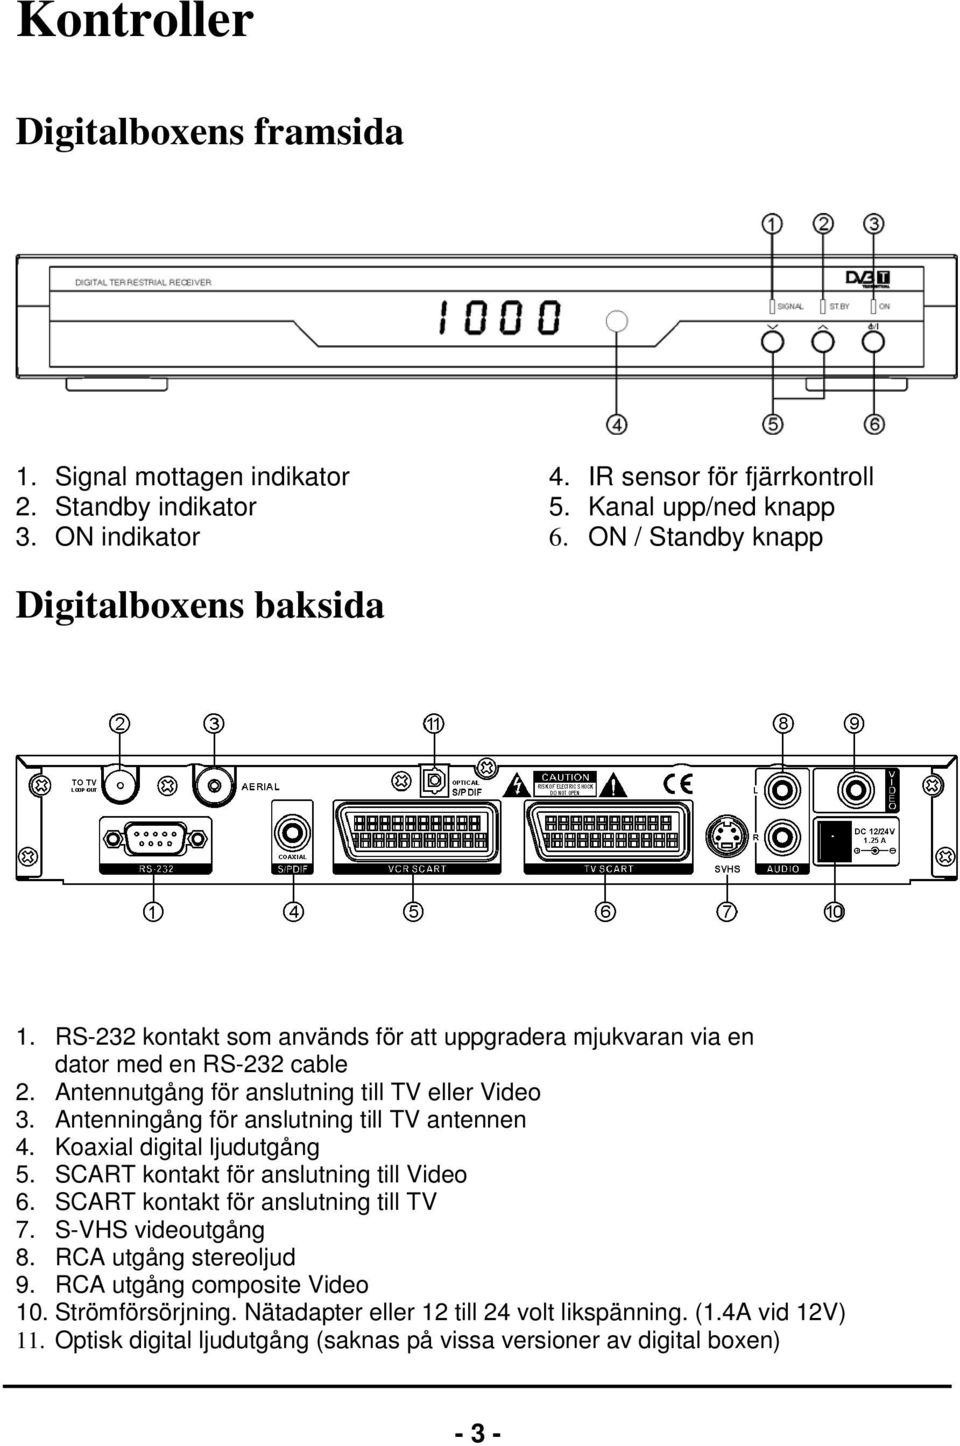 Antenningång för anslutning till TV antennen 4. Koaxial digital ljudutgång 5. SCART kontakt för anslutning till Video 6. SCART kontakt för anslutning till TV 7. S-VHS videoutgång 8.